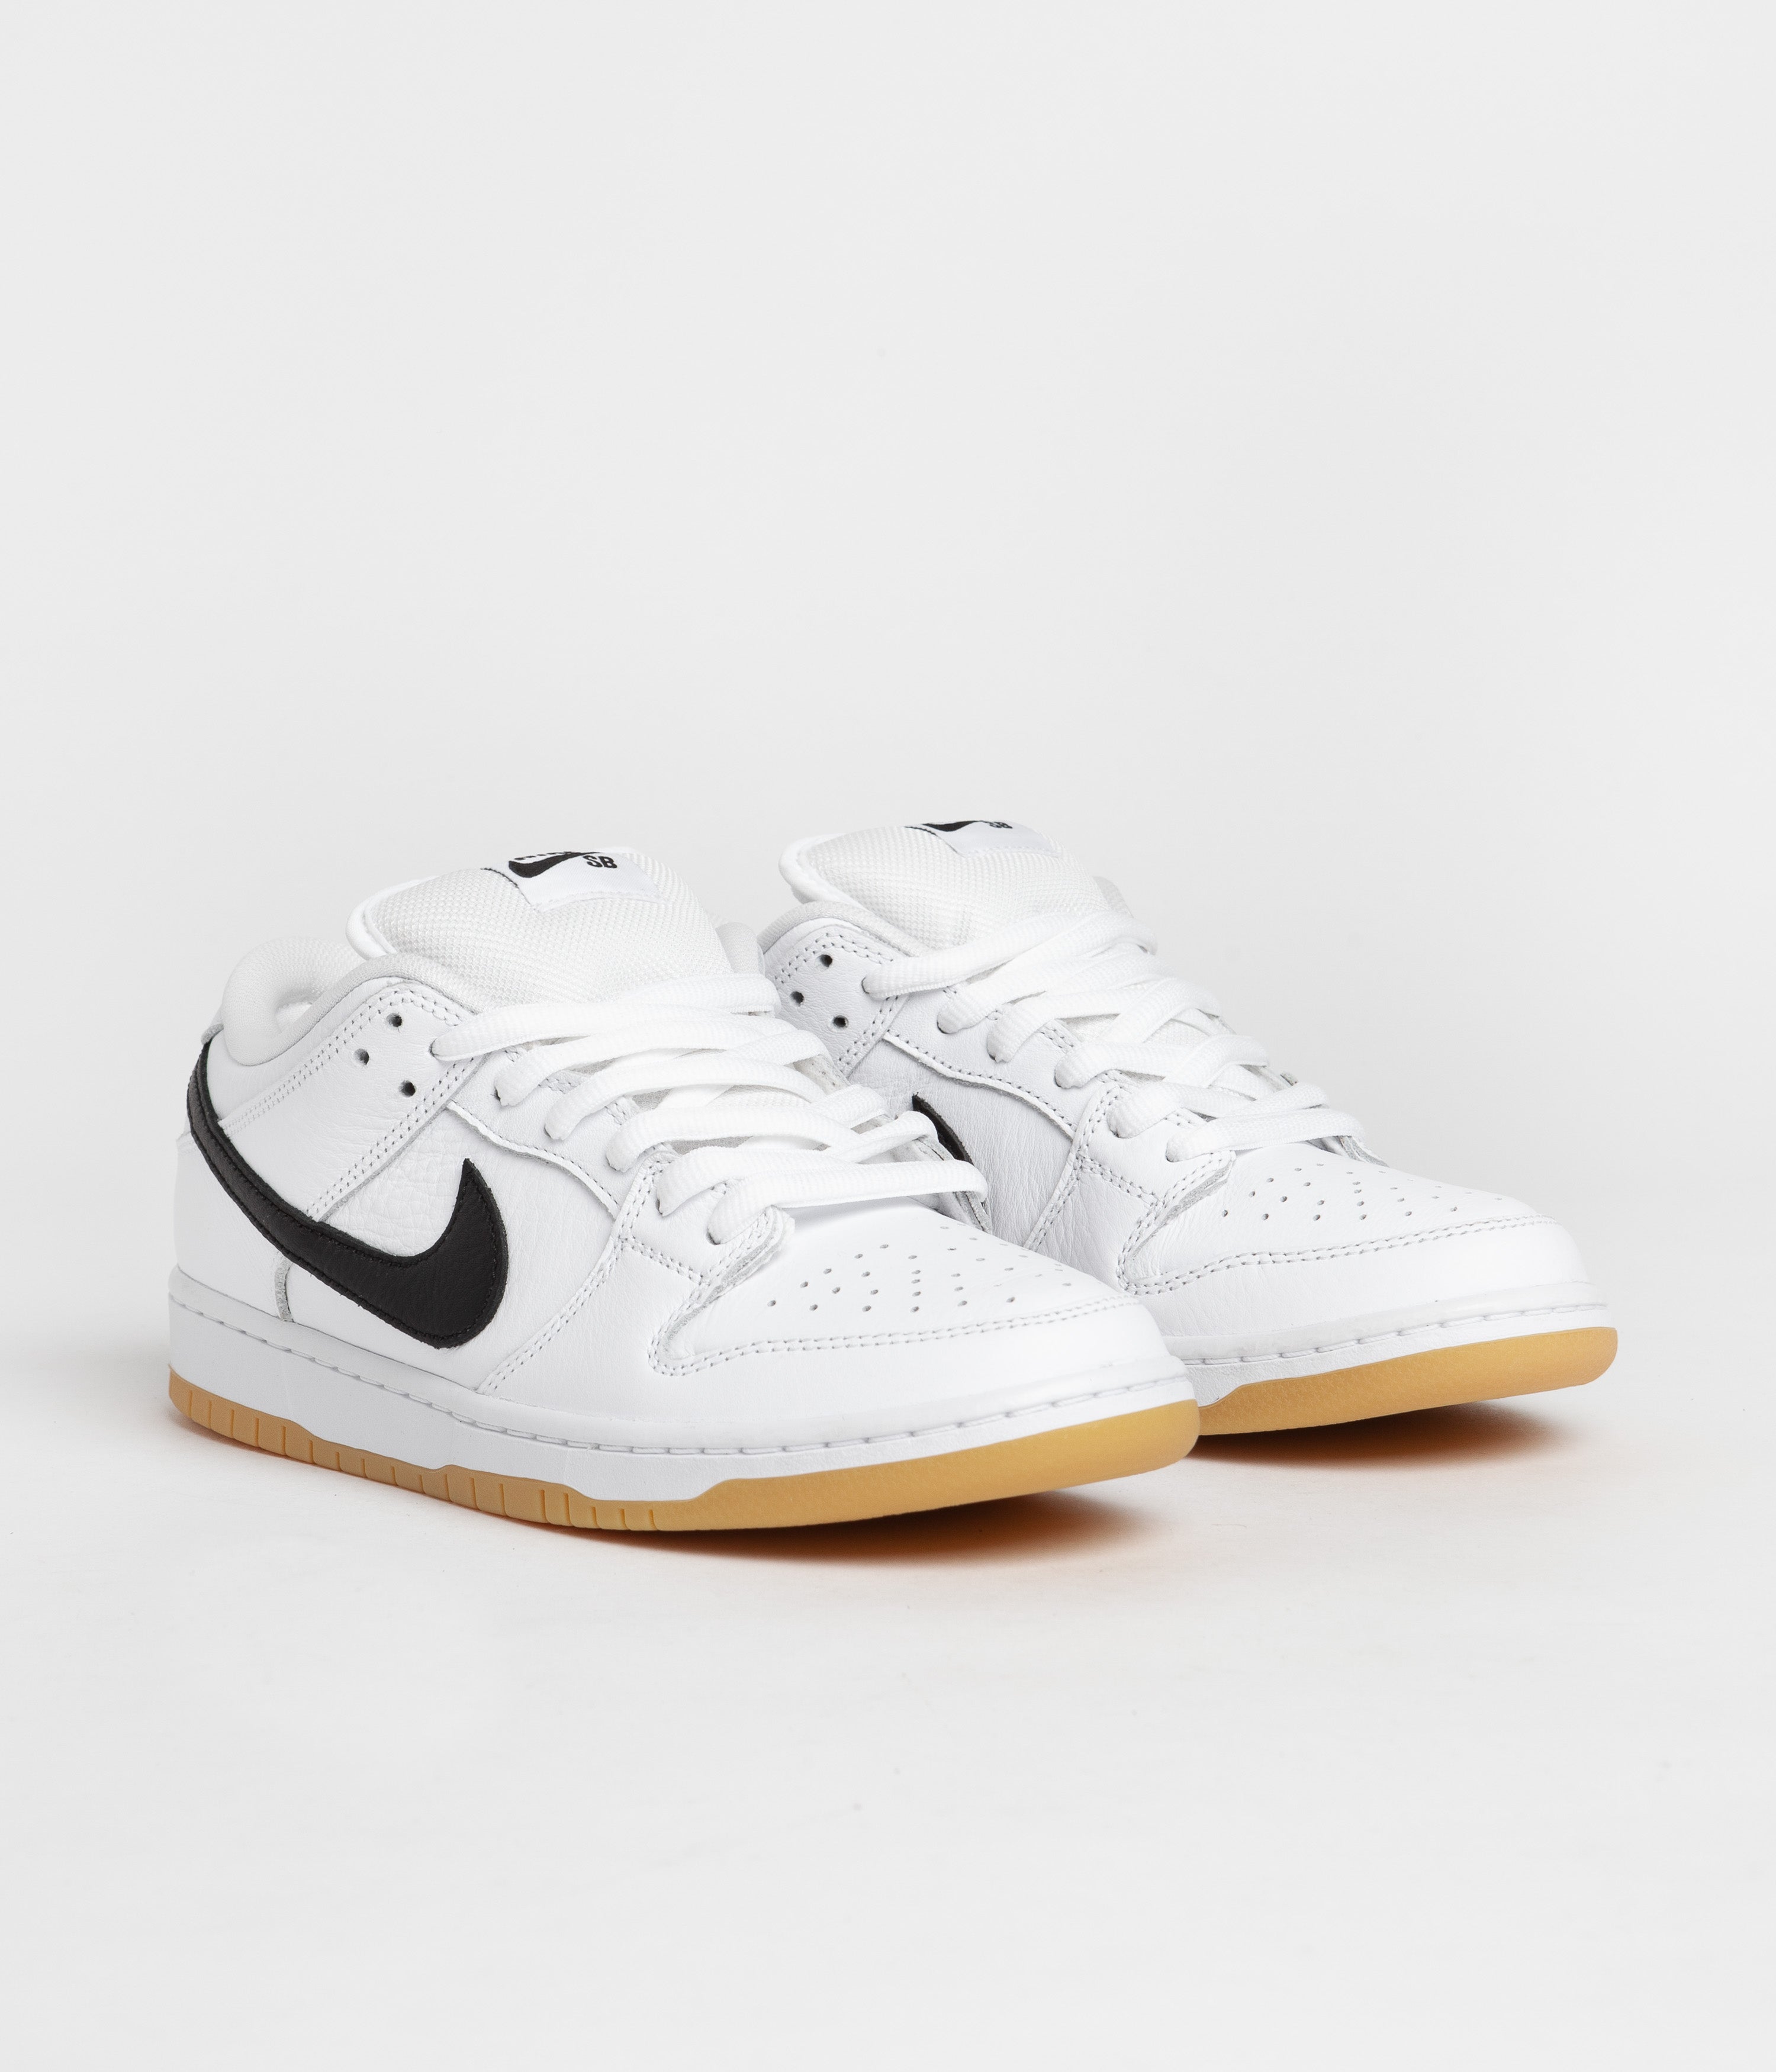 Nike SB Dunk Low Pro Shoes - White / Black - White - Gum Light ...